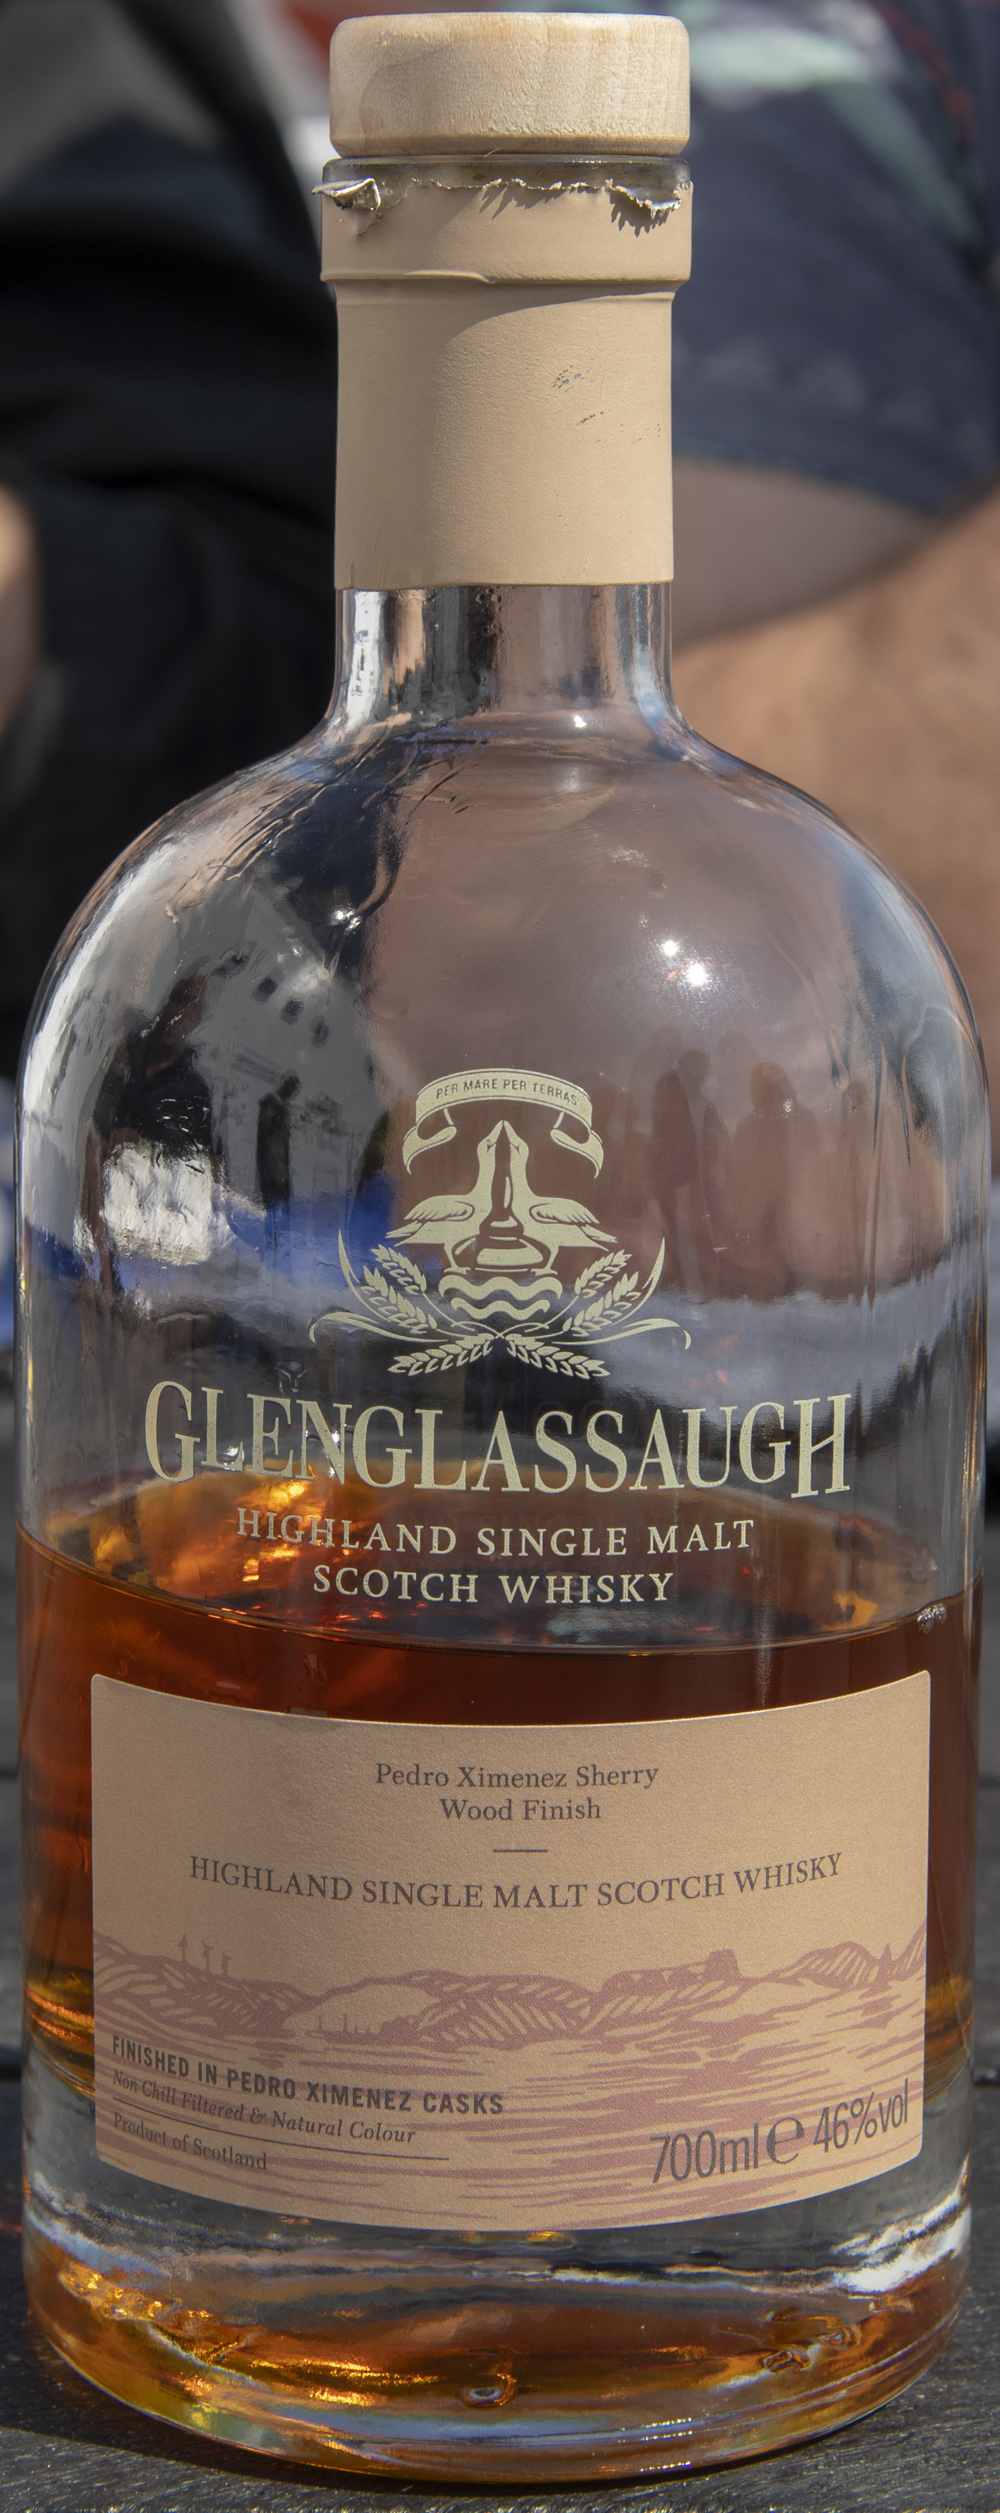 Billede: PHC_0063 - Glenglassaugh bottle front.jpg